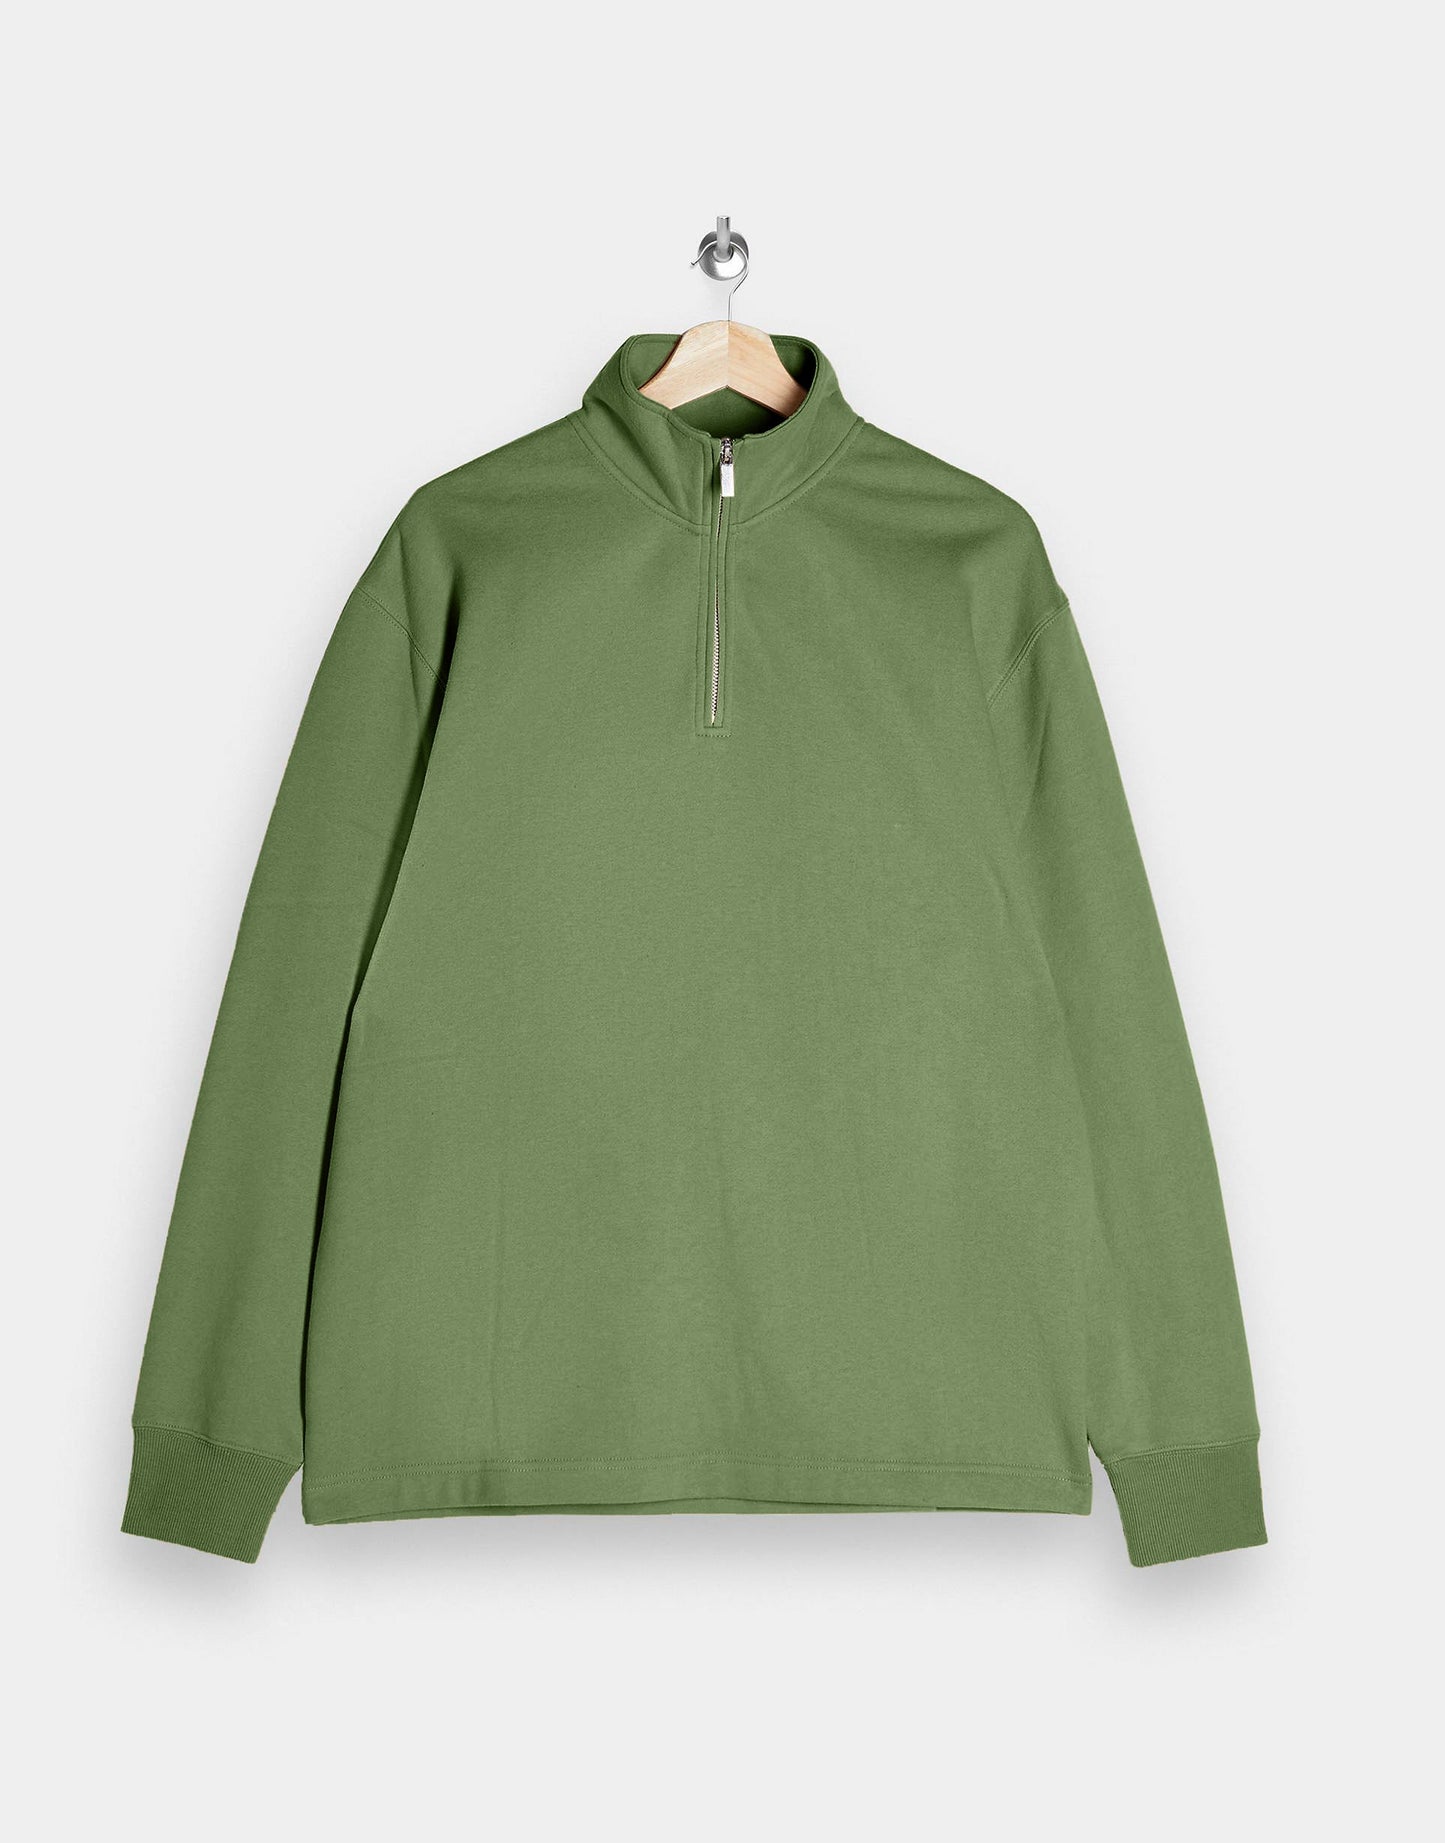 Hemsters Pista Green Sweatshirt For Mens